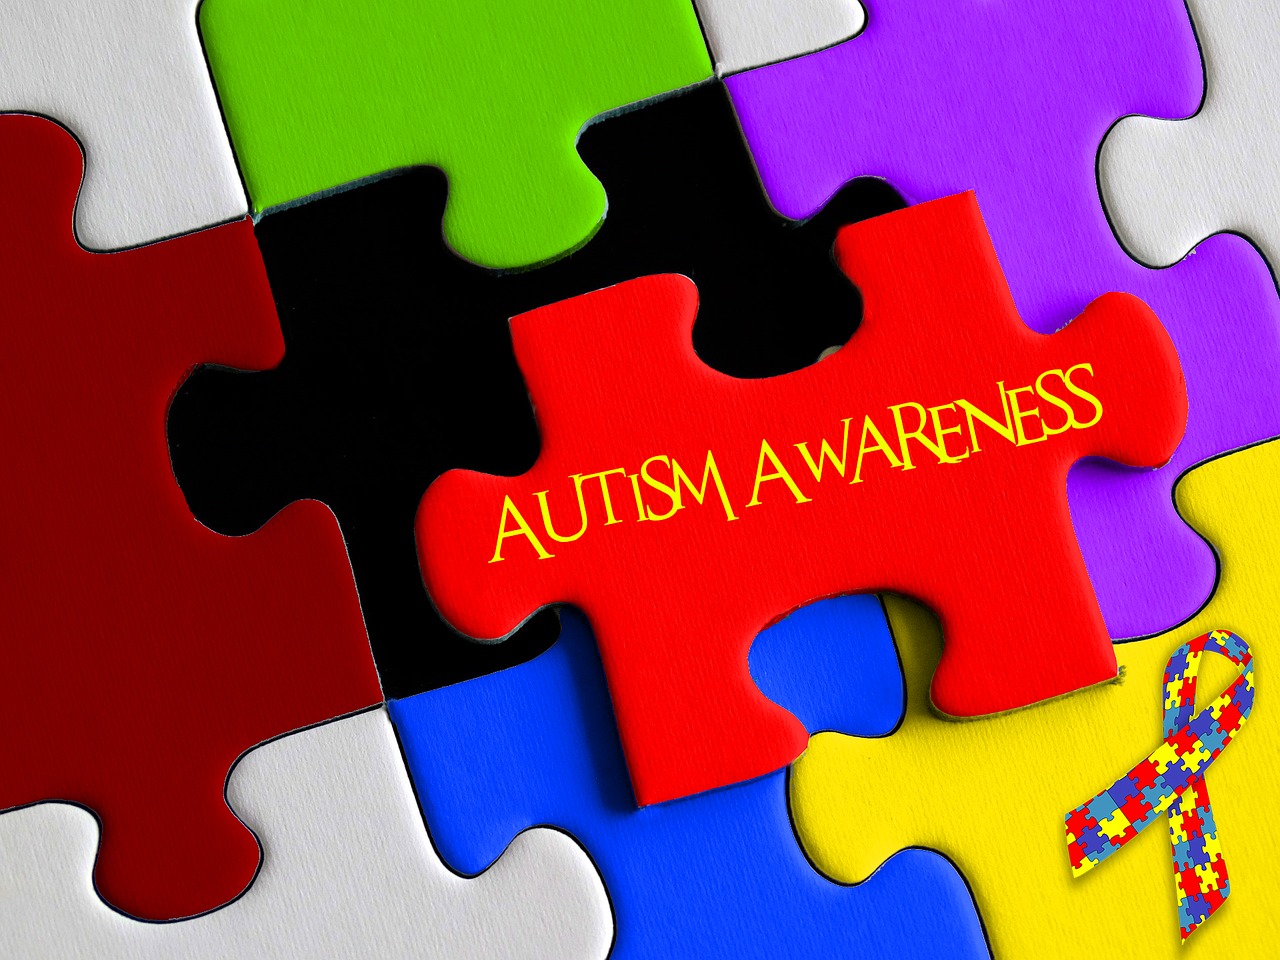 Cegah risiko anak terlahir autis dan kenali gejala autisme